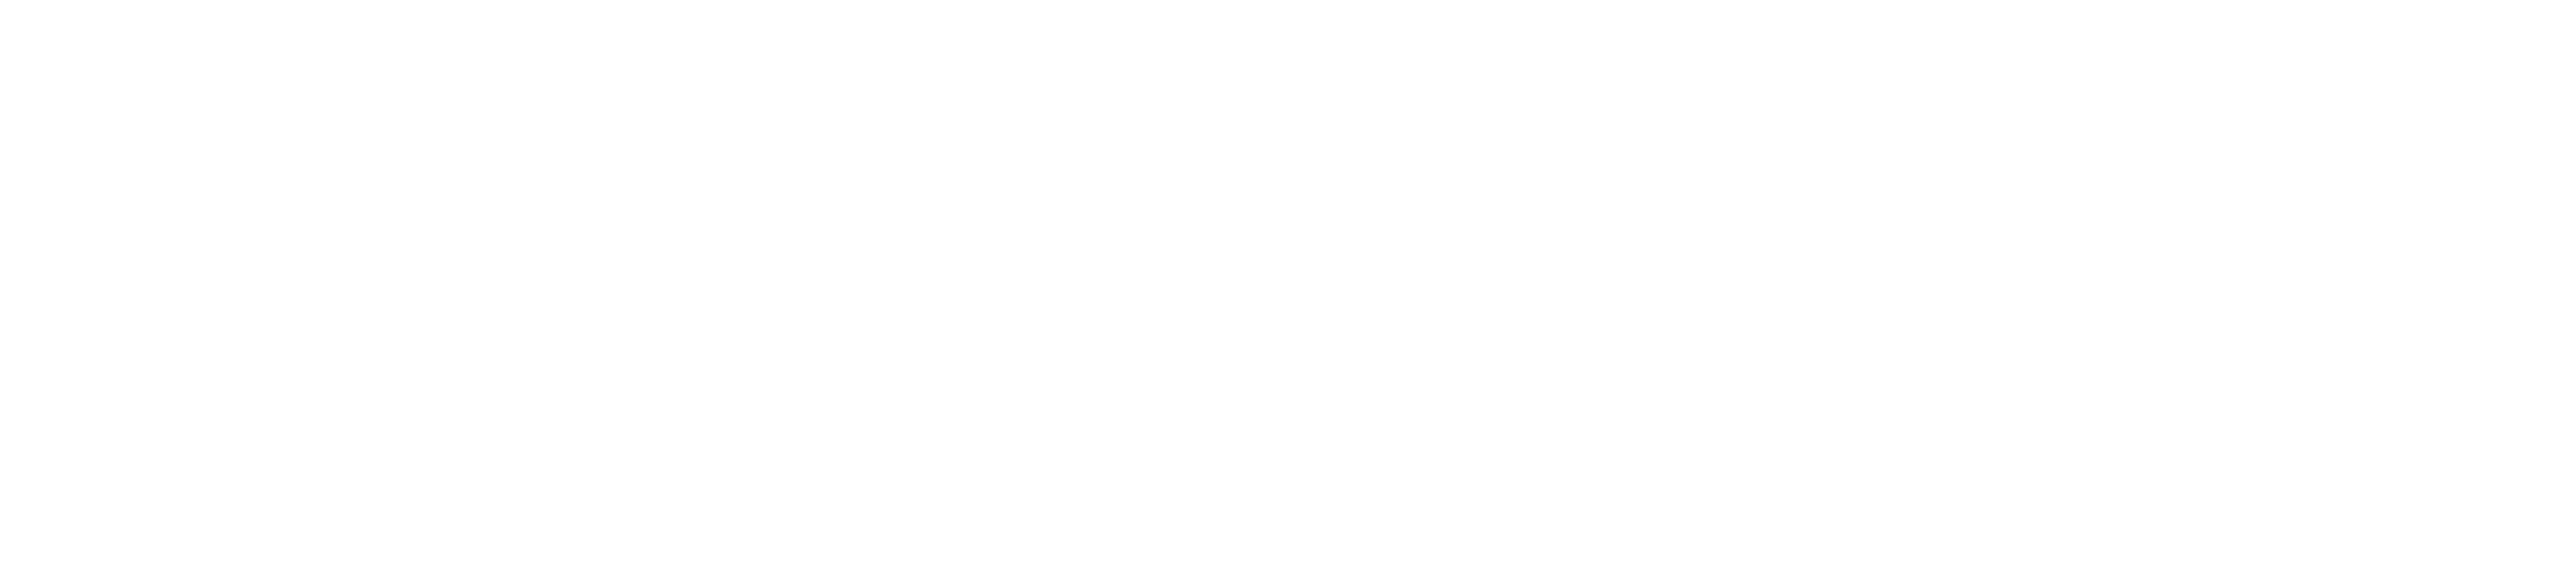 Radio France Publicite Blanc